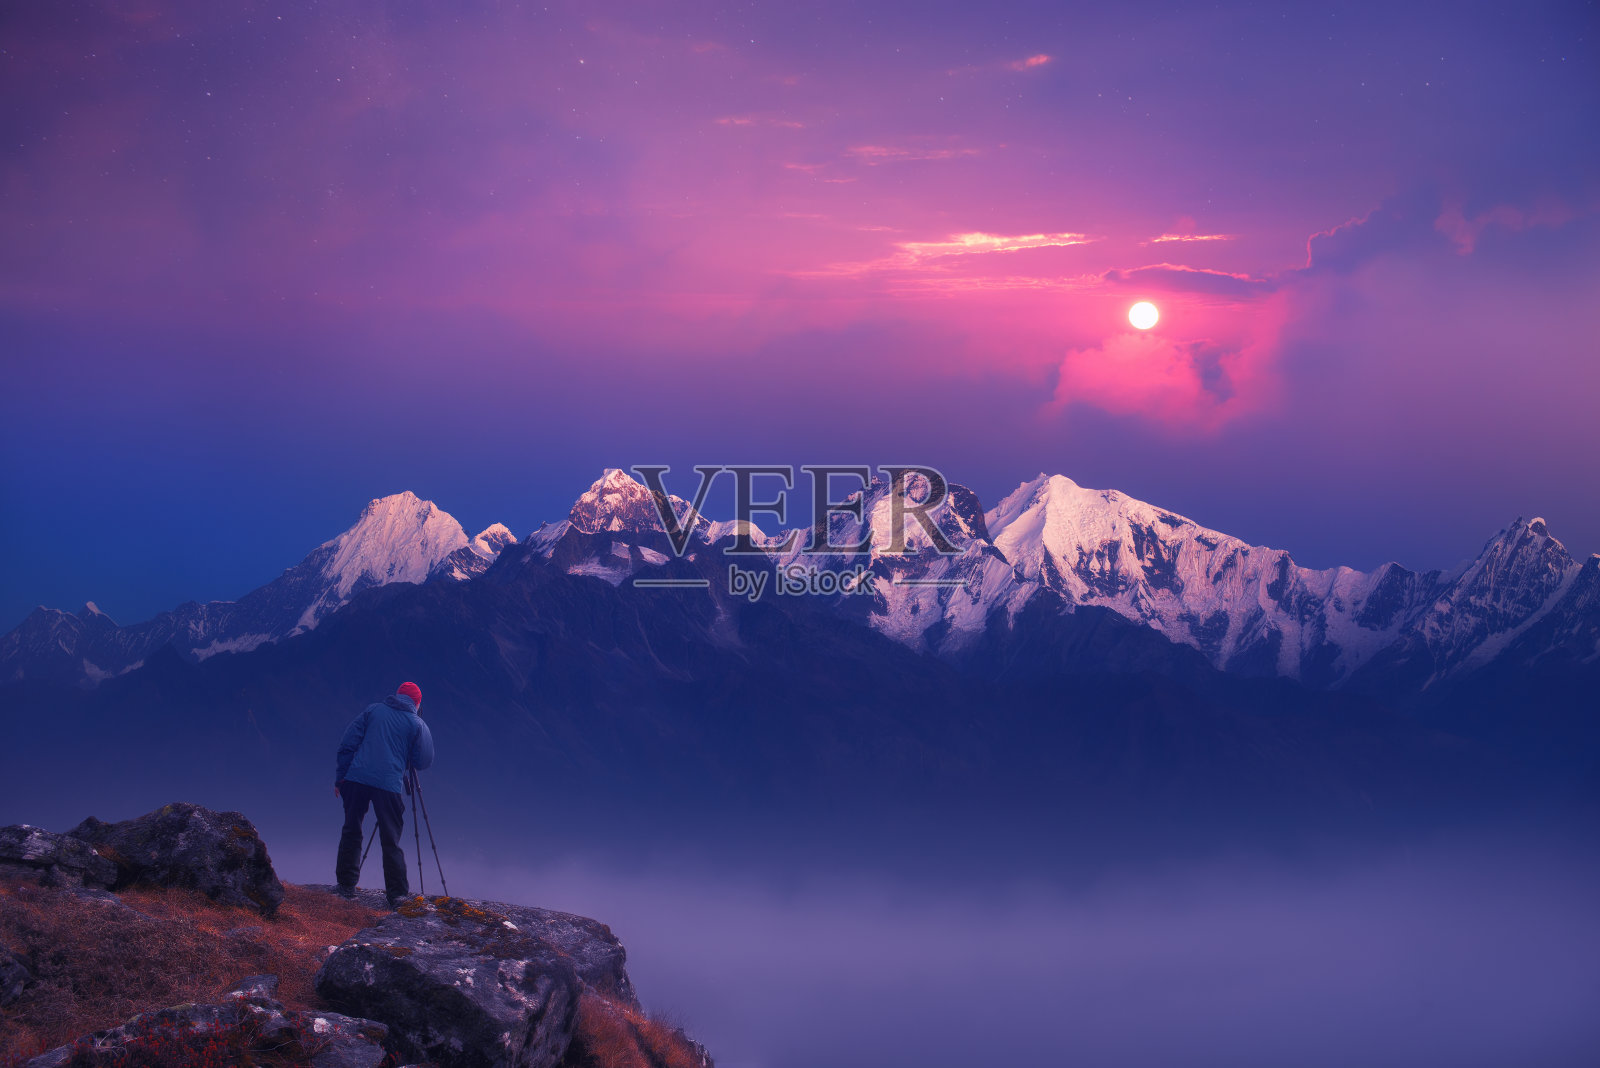 摄影师旅行者在喜马拉雅山拍摄日出的照片。尼泊尔照片摄影图片